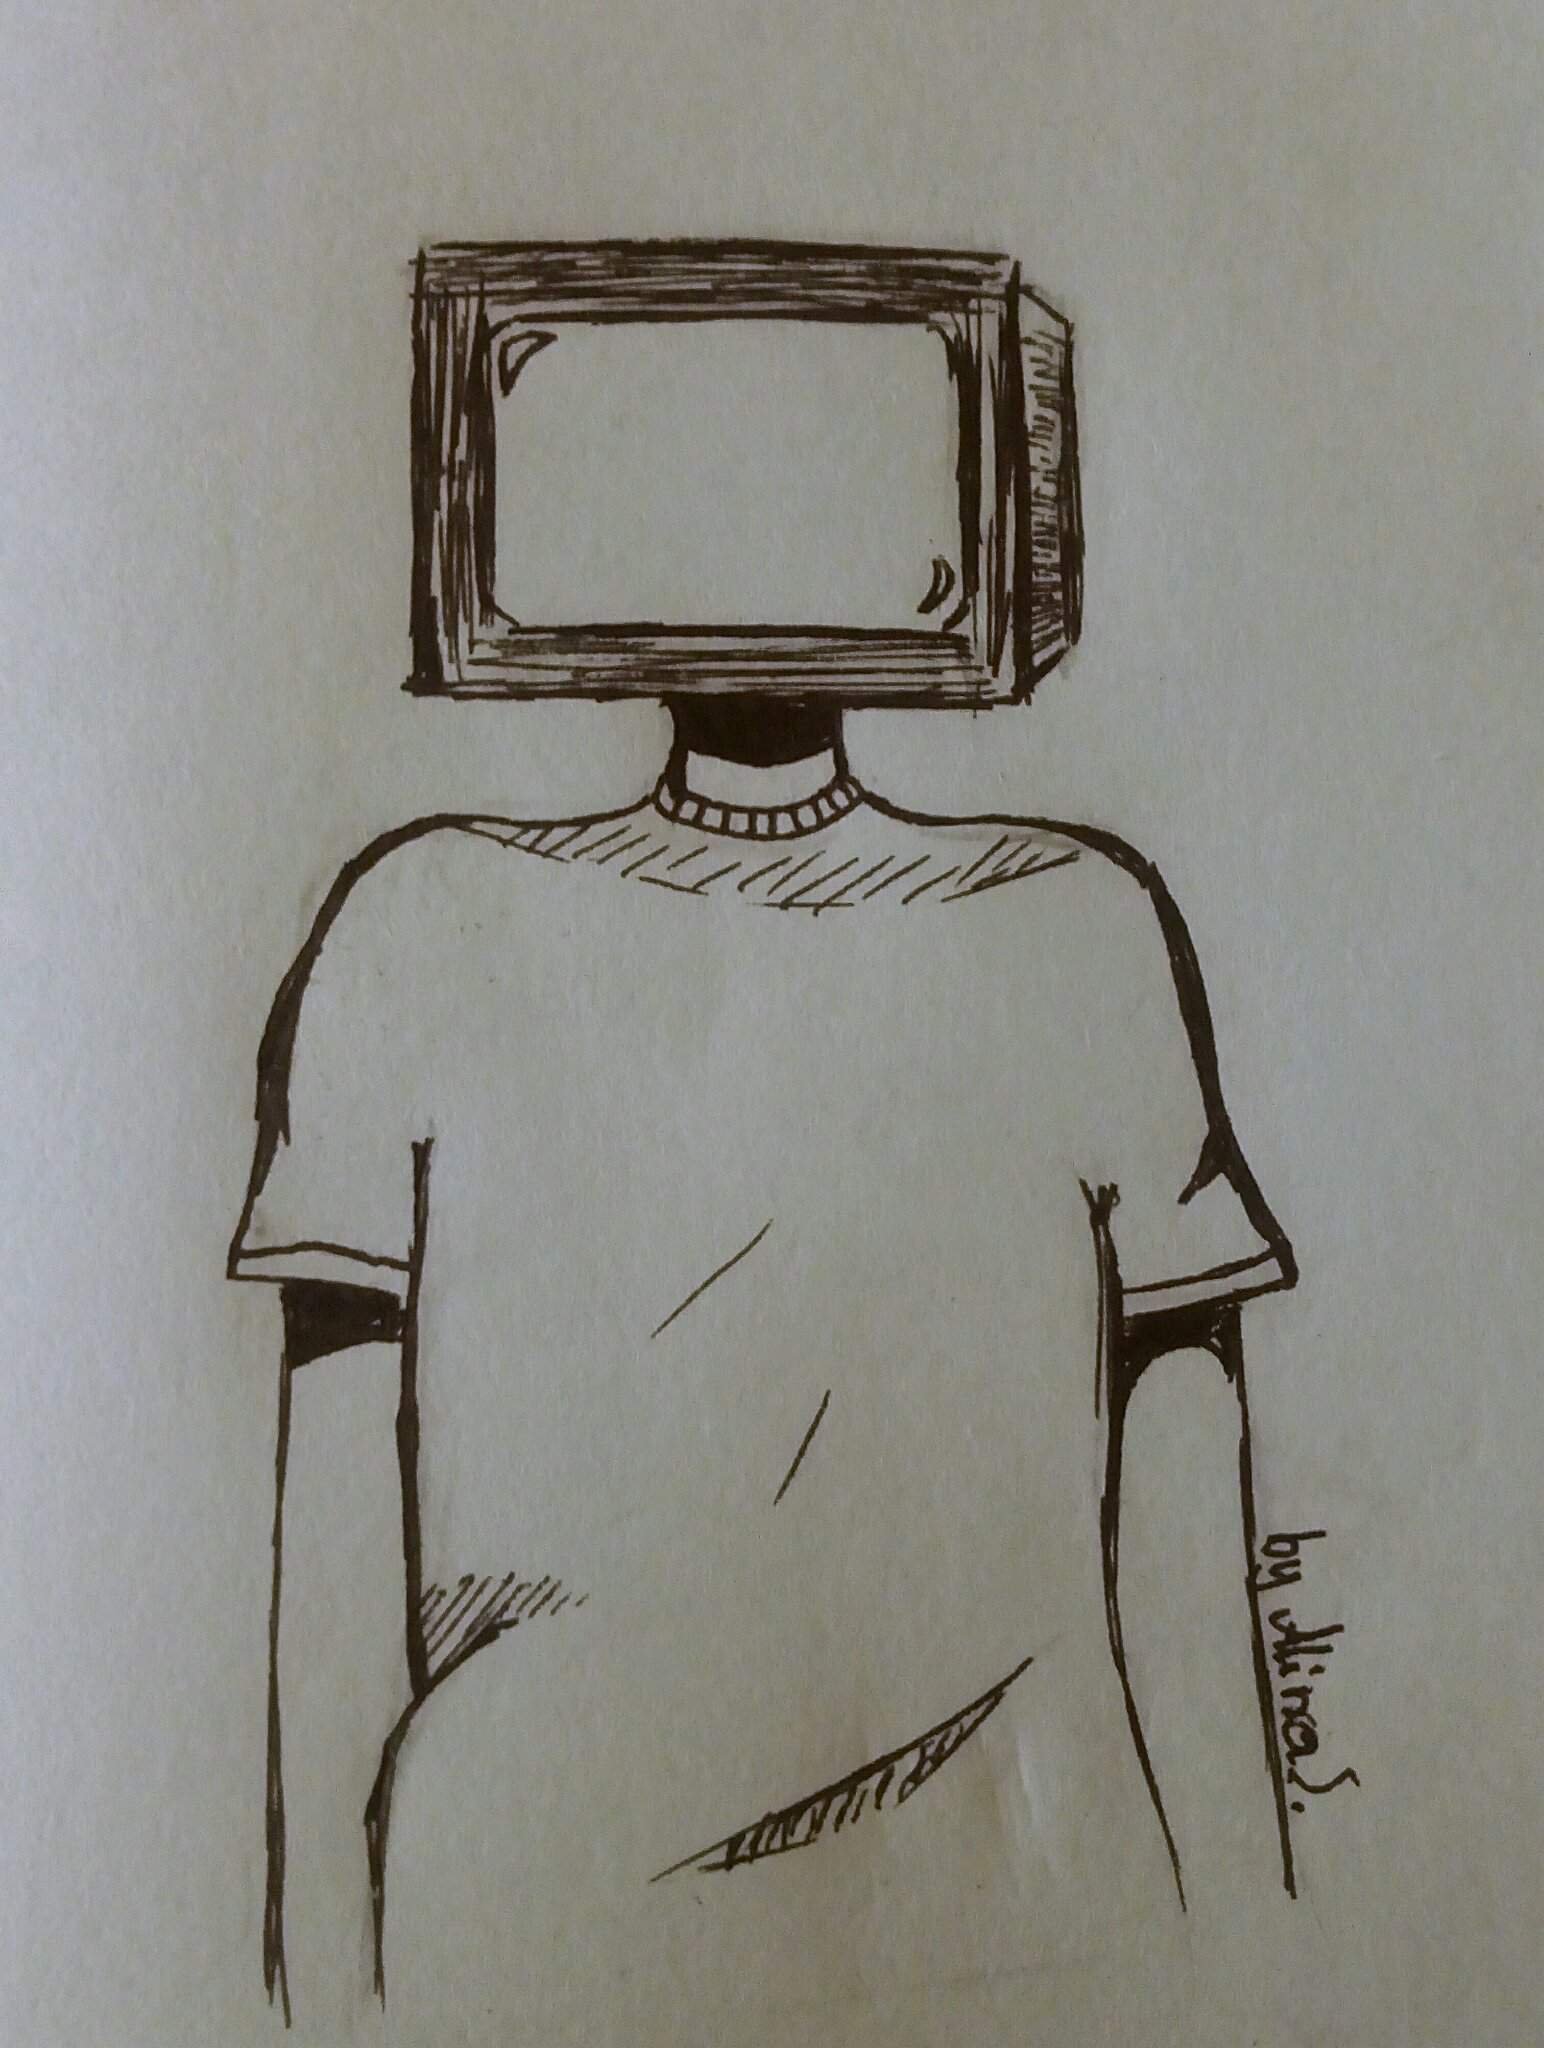 Телевизор вместо головы